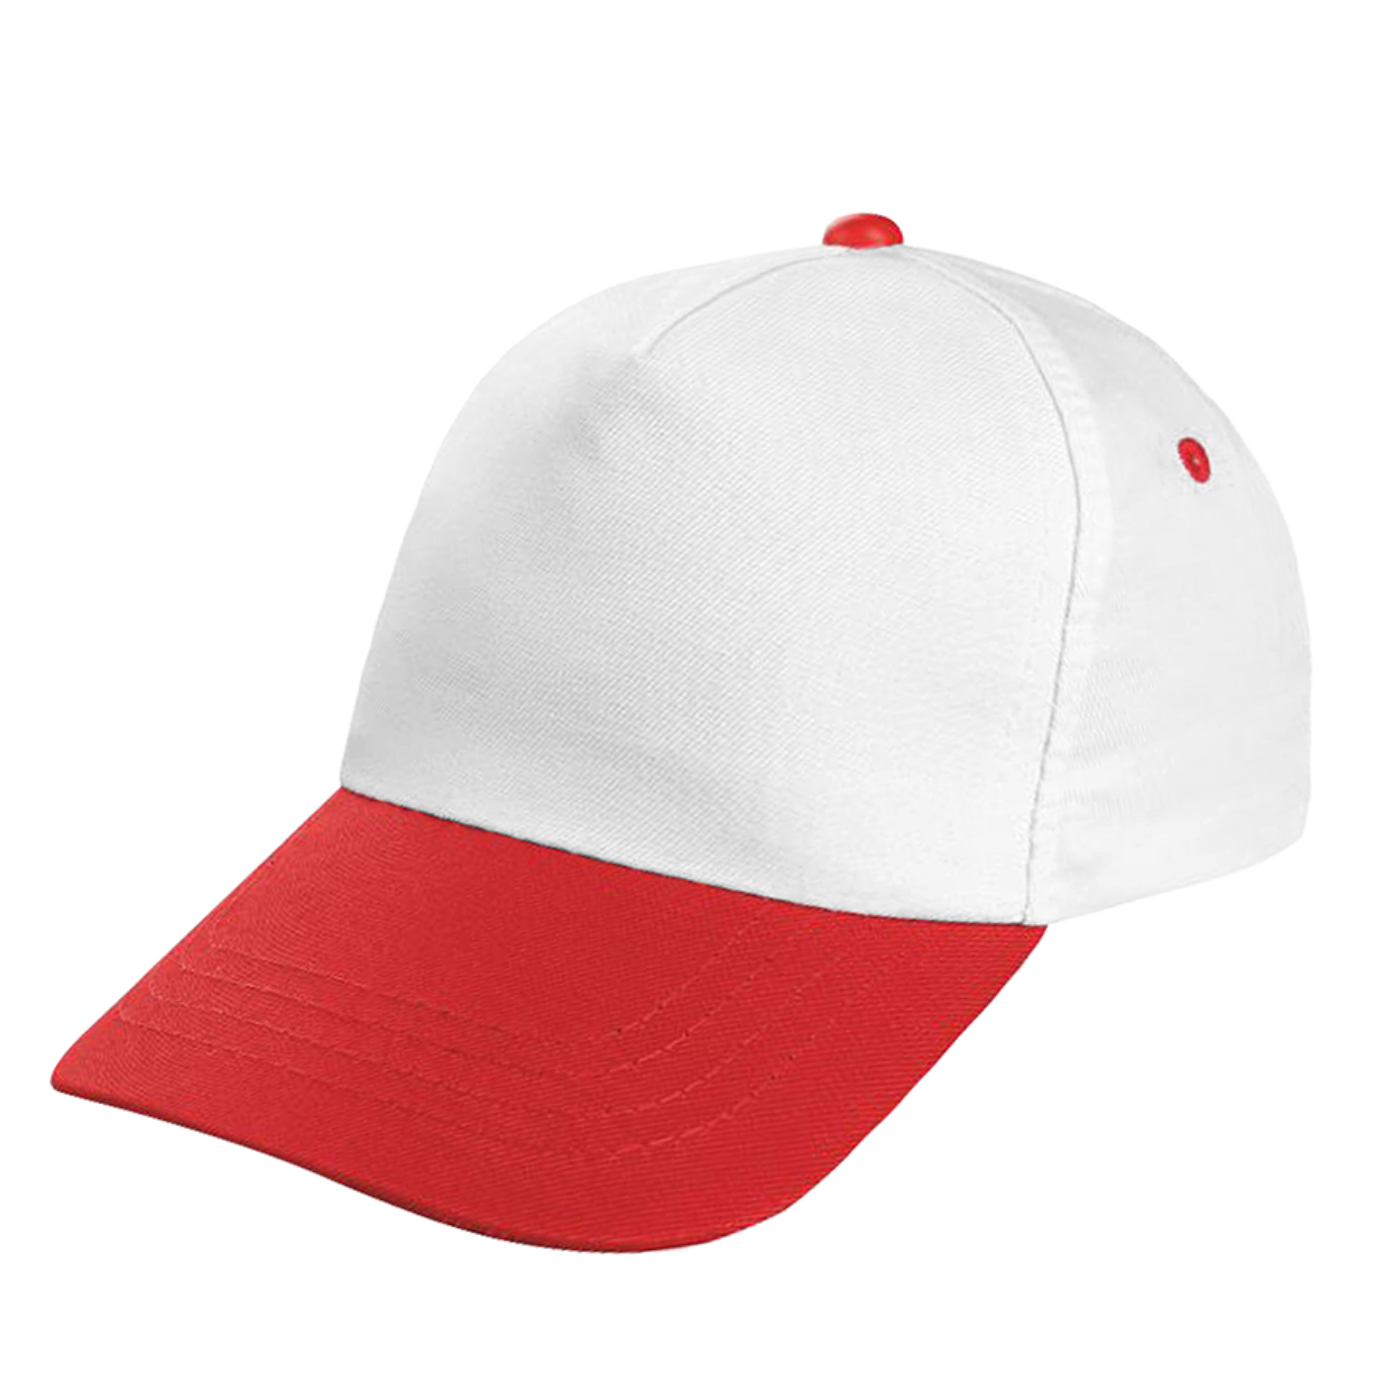 Promosyon Şapka - Kırmızı Siper